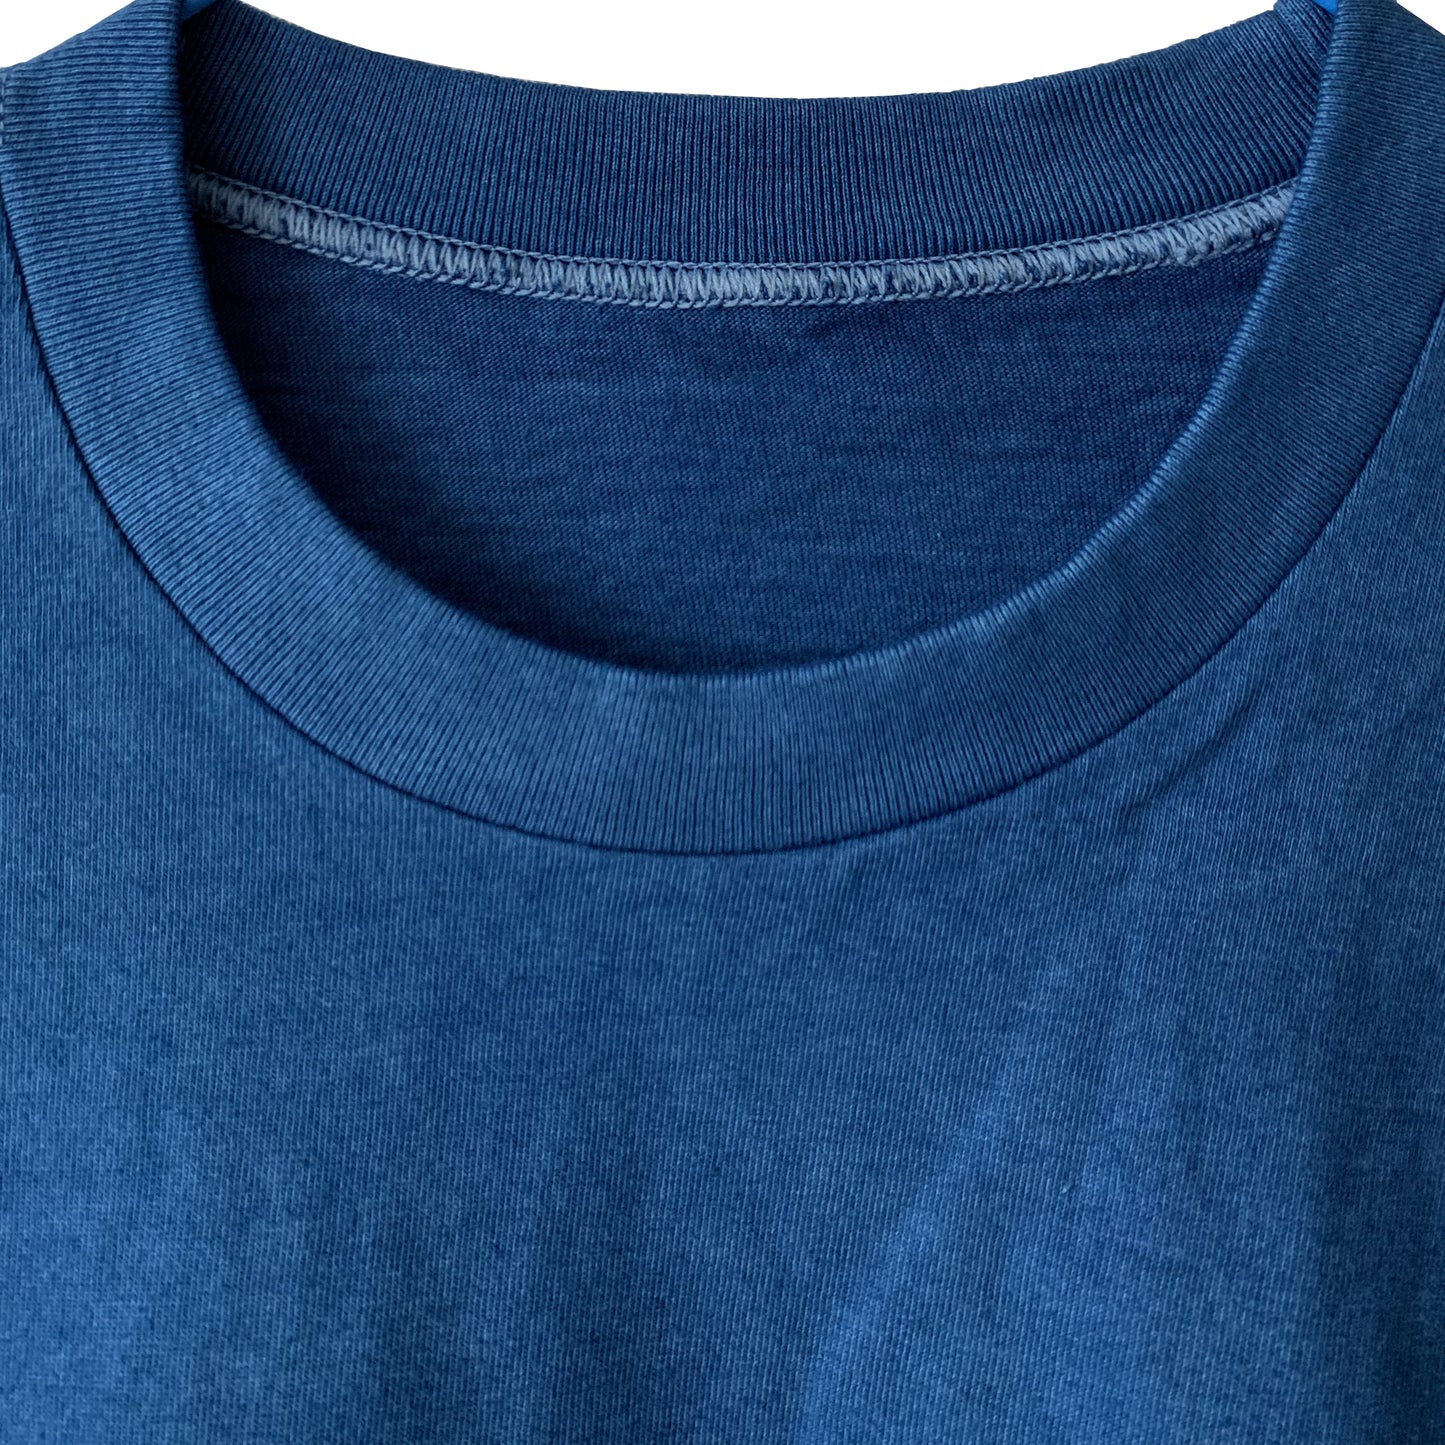 Japanese made round body T-shirt indigo dyed (indigo)